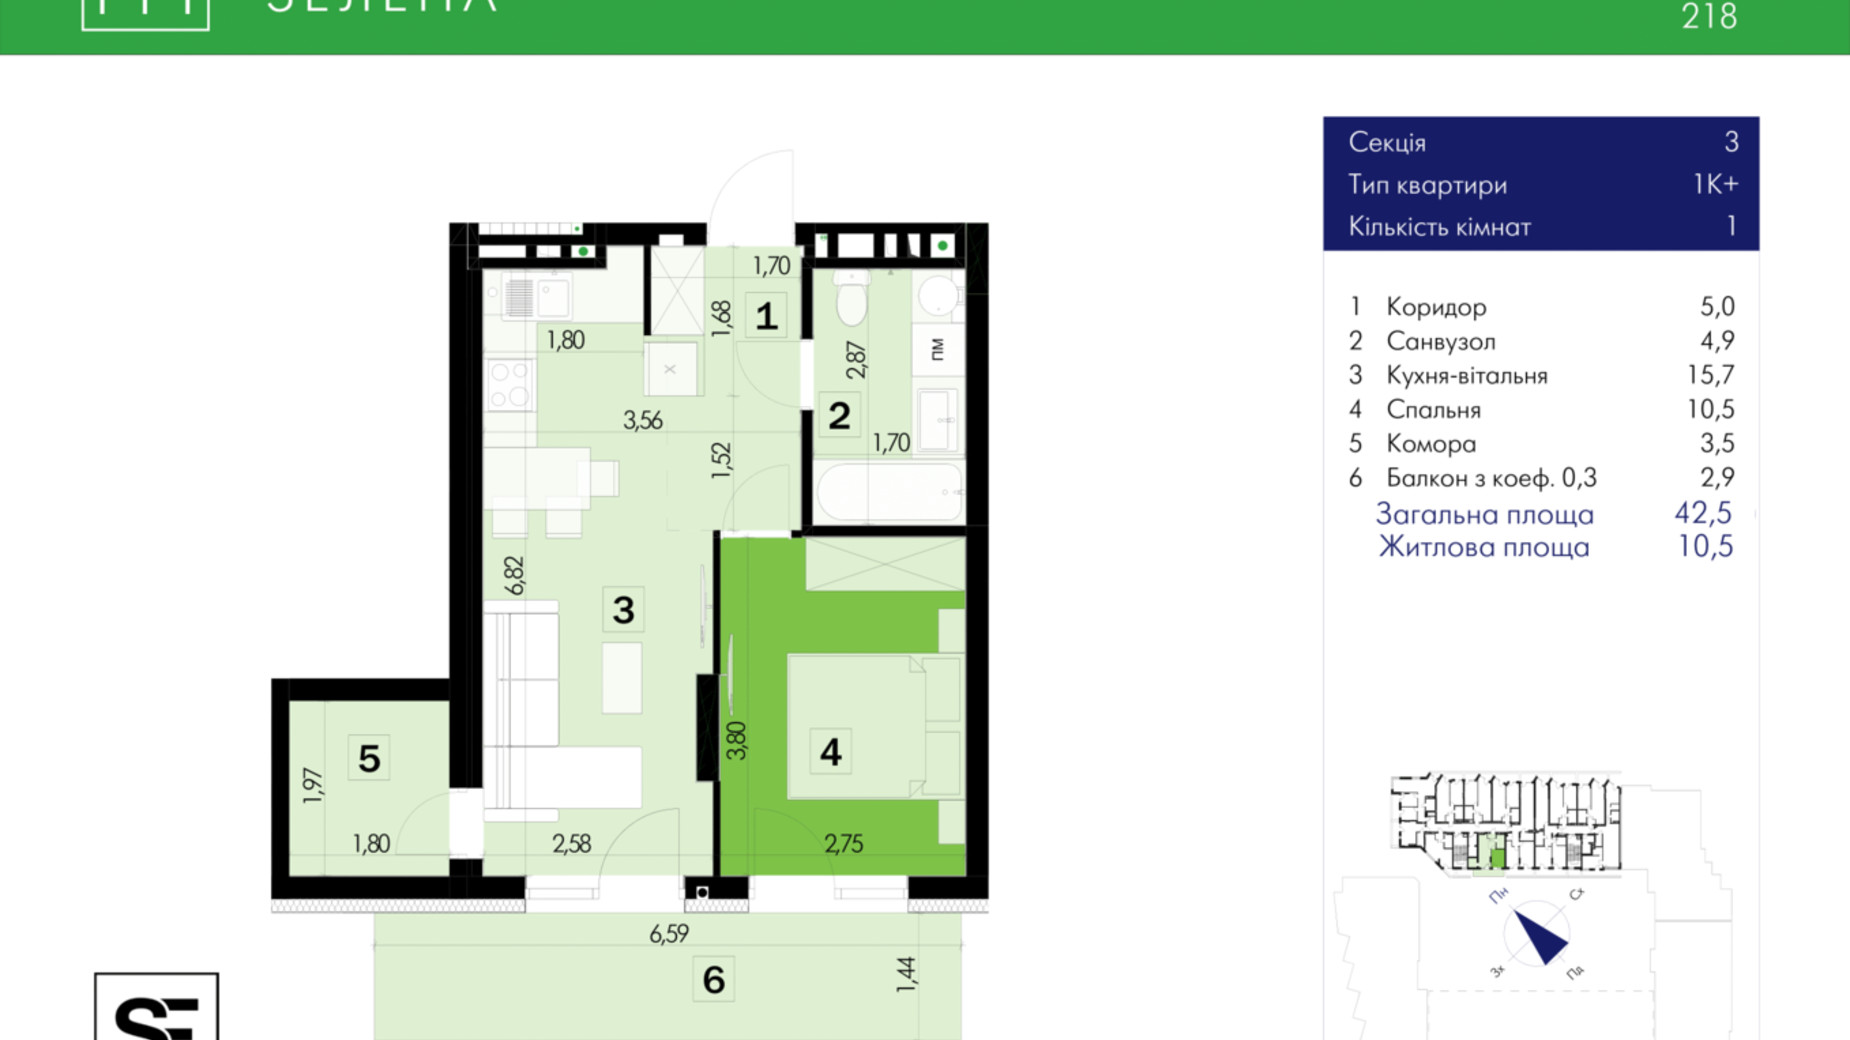 Планировка 1-комнатной квартиры в ЖК 111 Зеленая 42.5 м², фото 634018